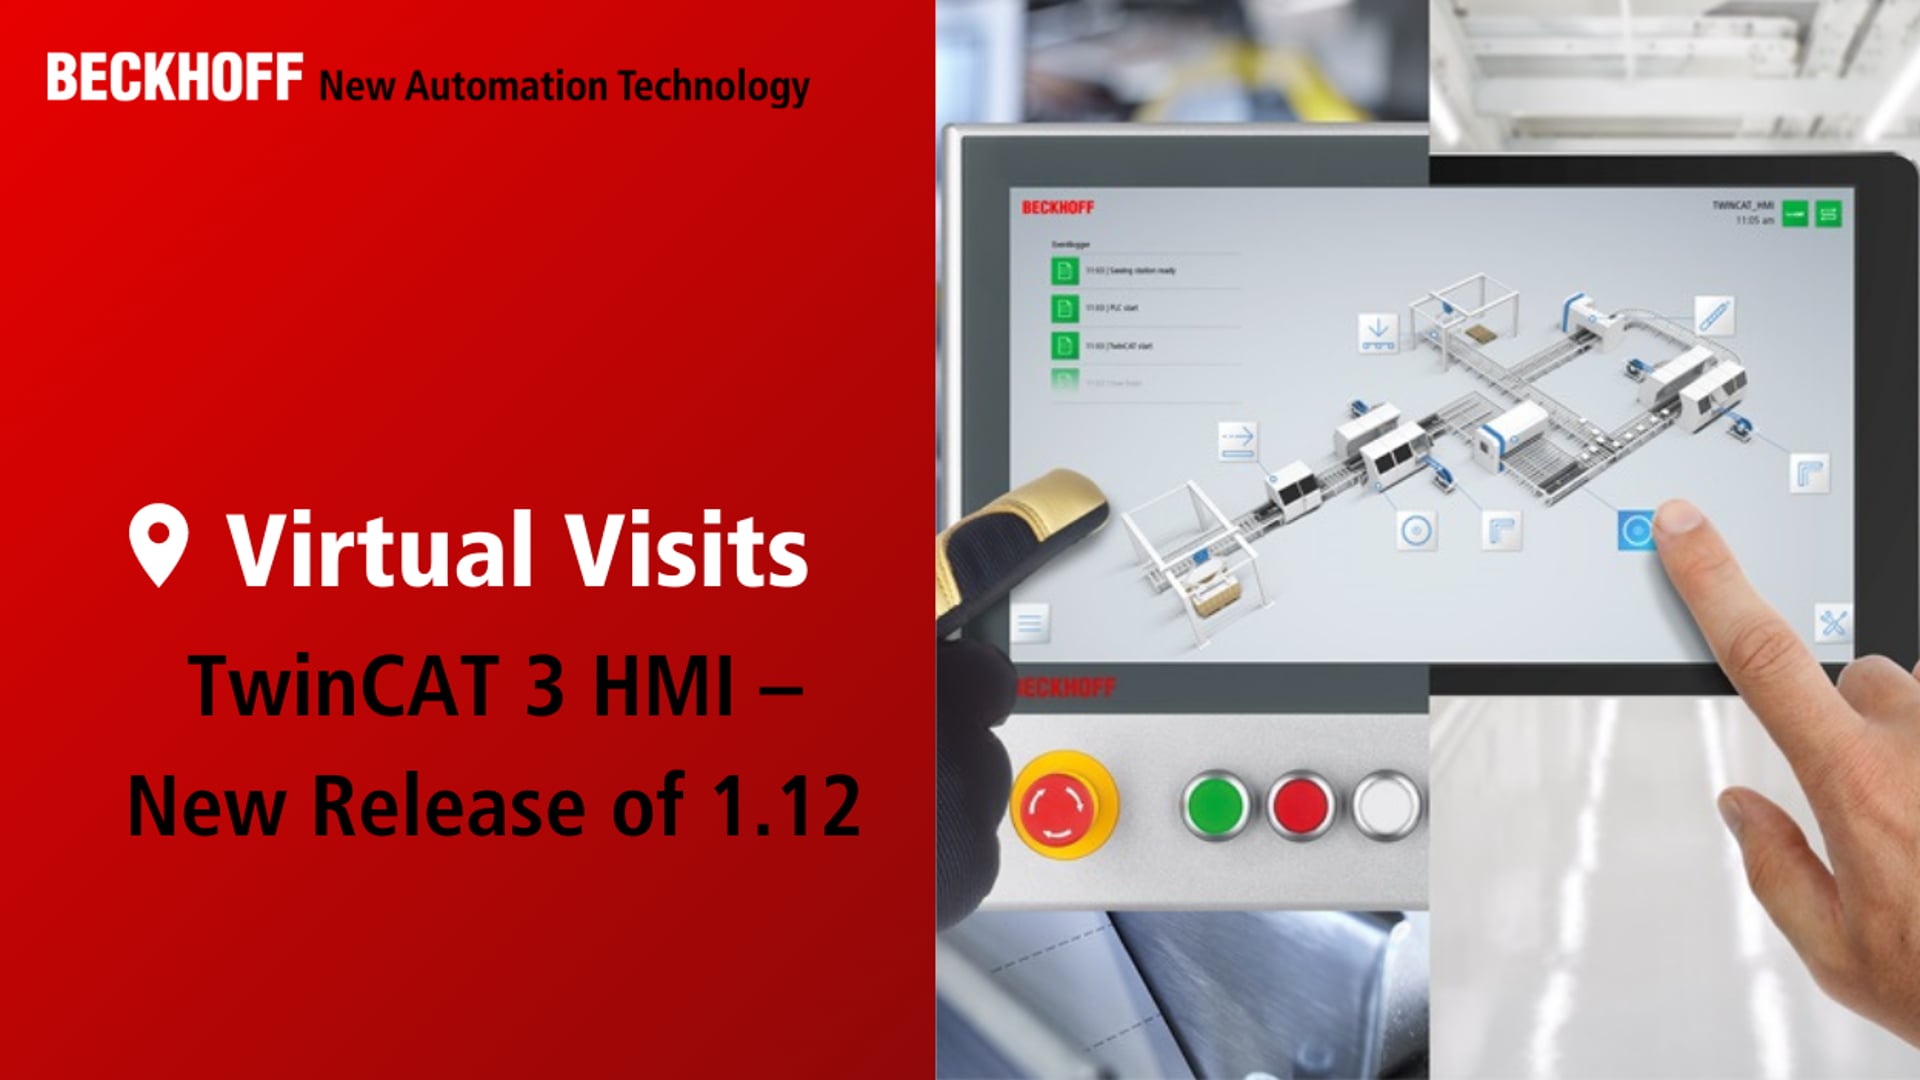 TwinCAT 3 HMI – New Release of 1.12